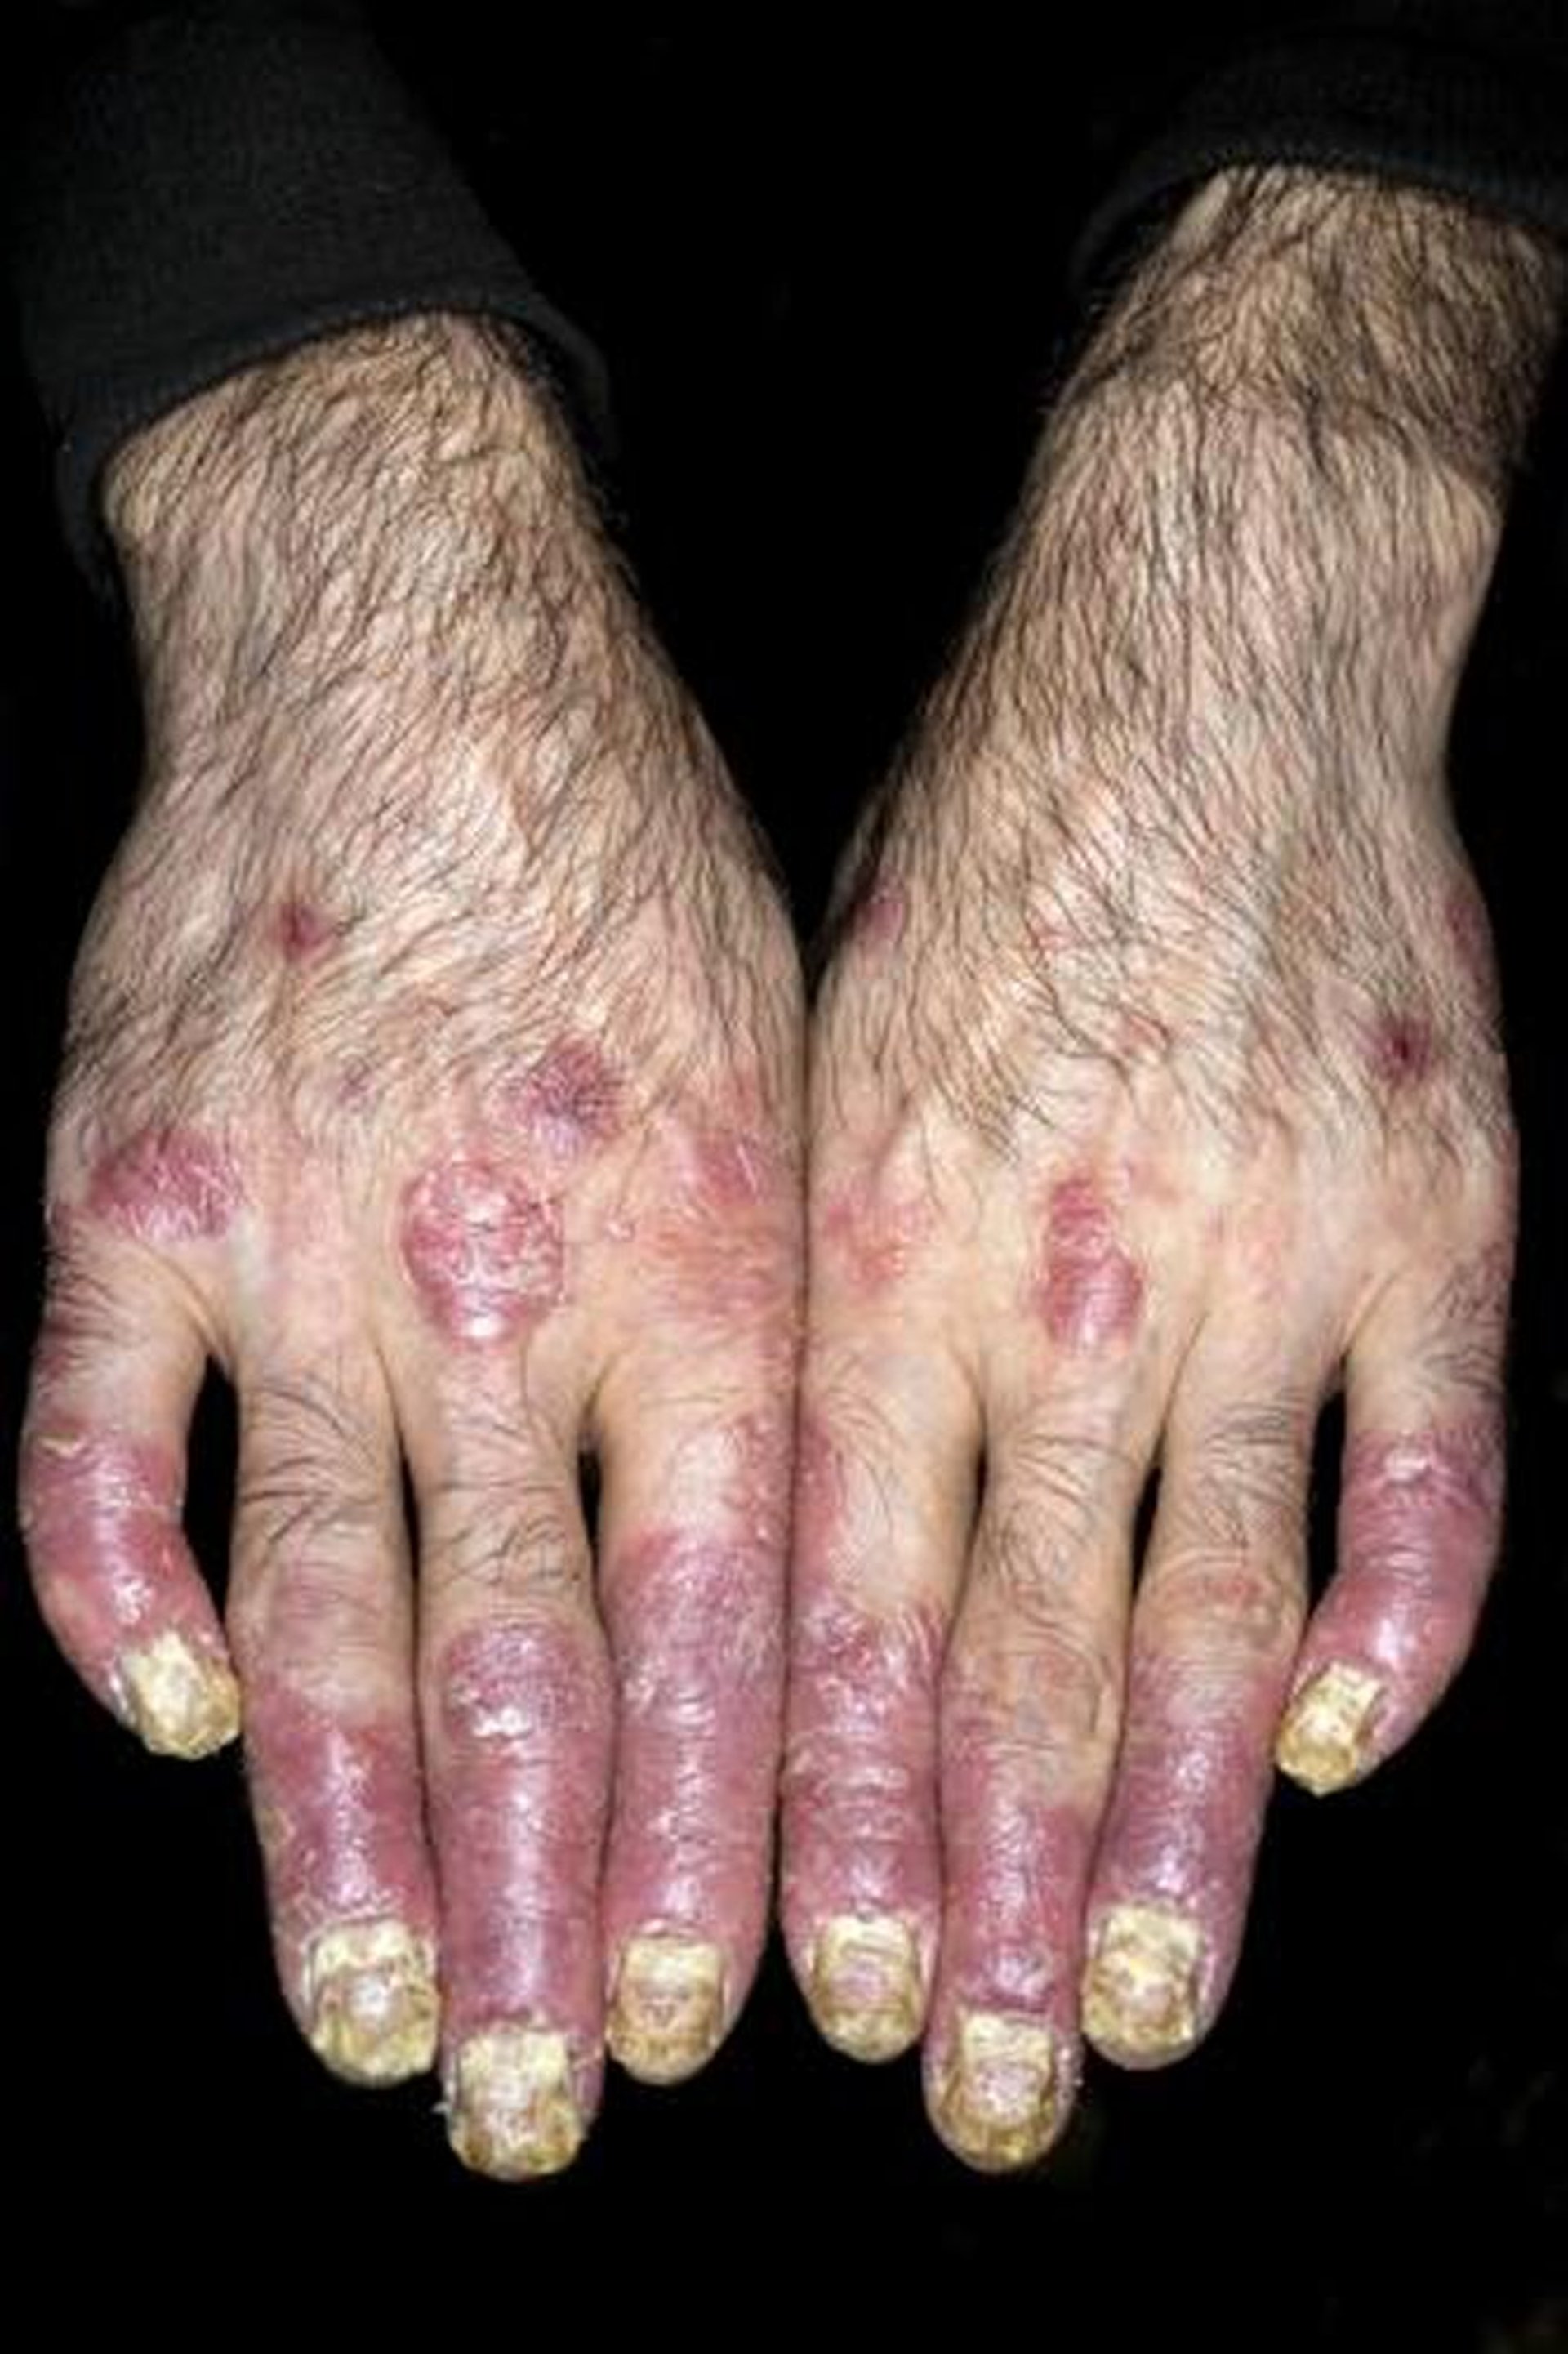 Psoriatic Arthritis of the Fingers